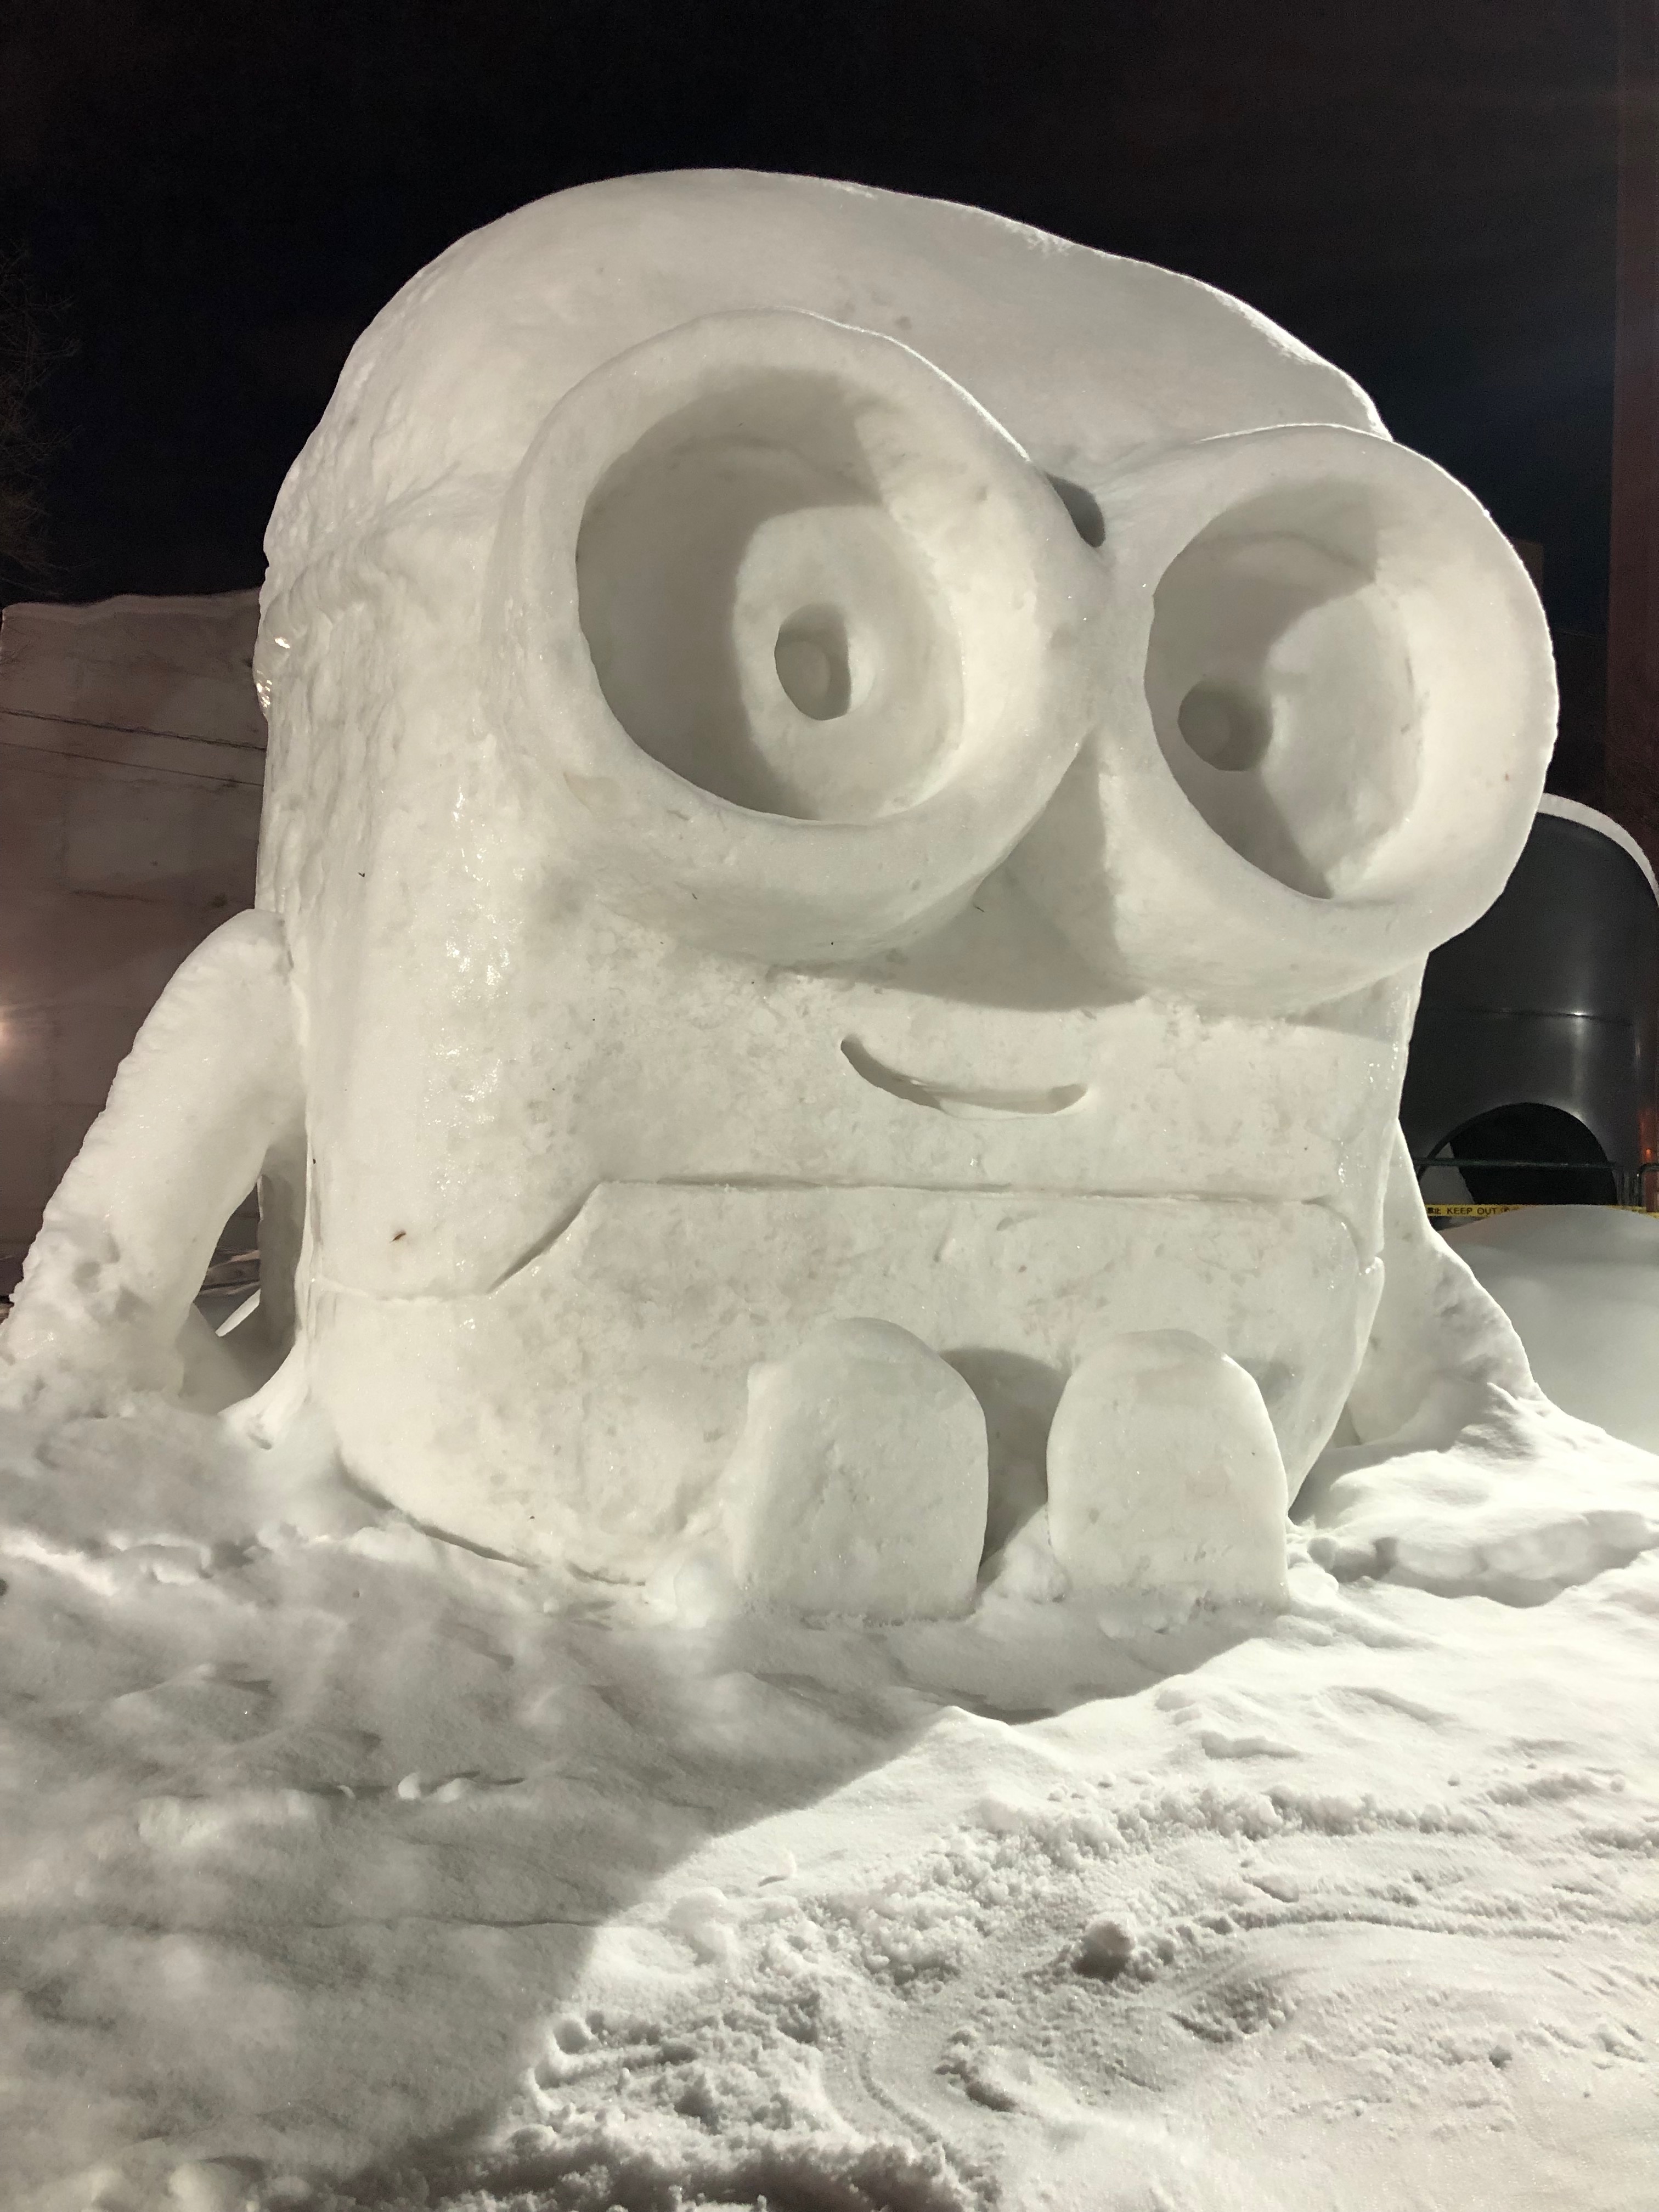 Minions, Citizens' Snow Sculptures